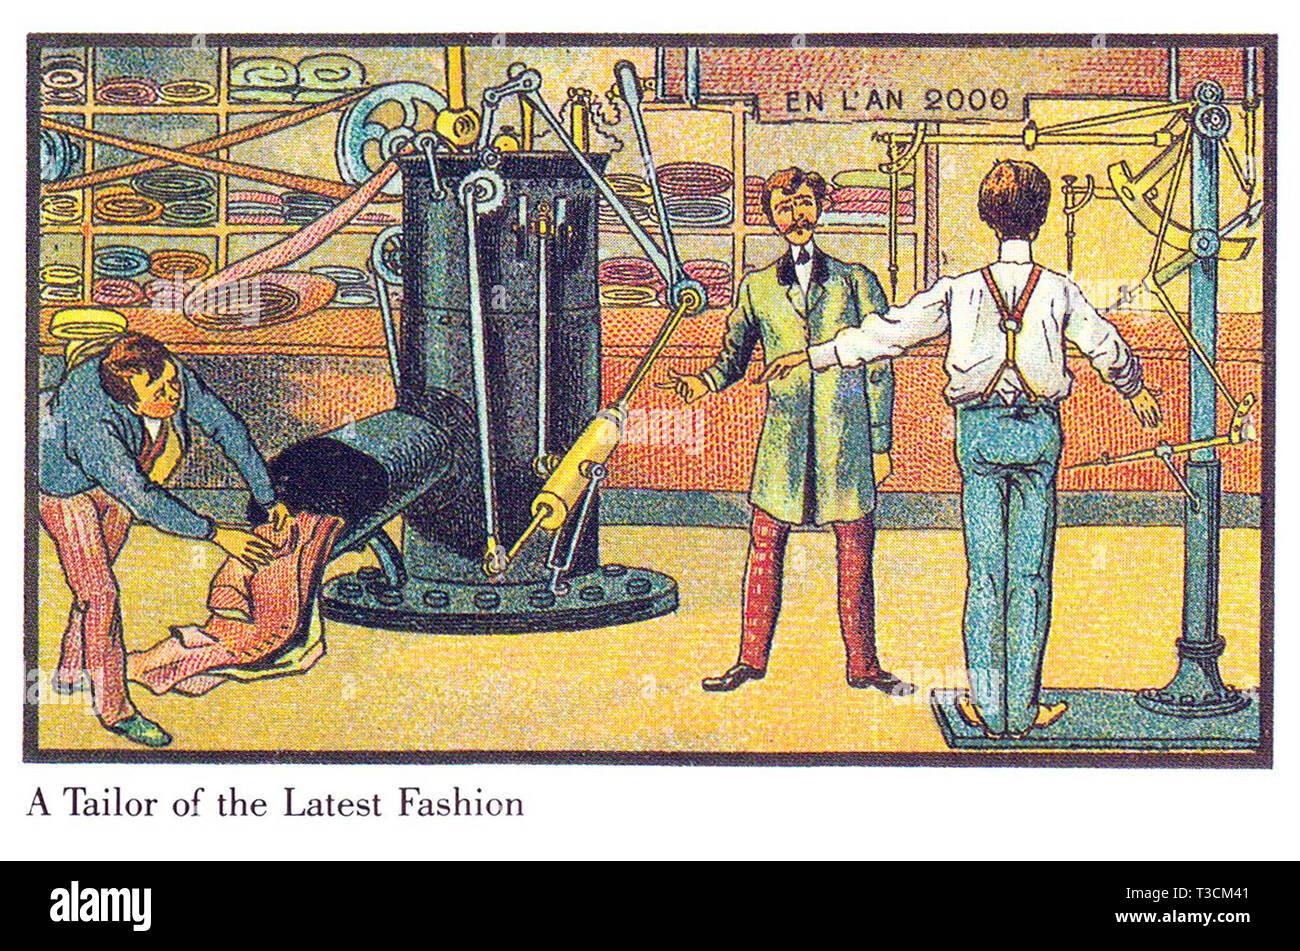 Nell'anno 2000 serie francese di illustrazioni pubblicati tra il 1899 e il 1910 immaginario che mostra i progressi tecnologici. L'ultima moda per uomo prodotta automaticamente. Foto Stock